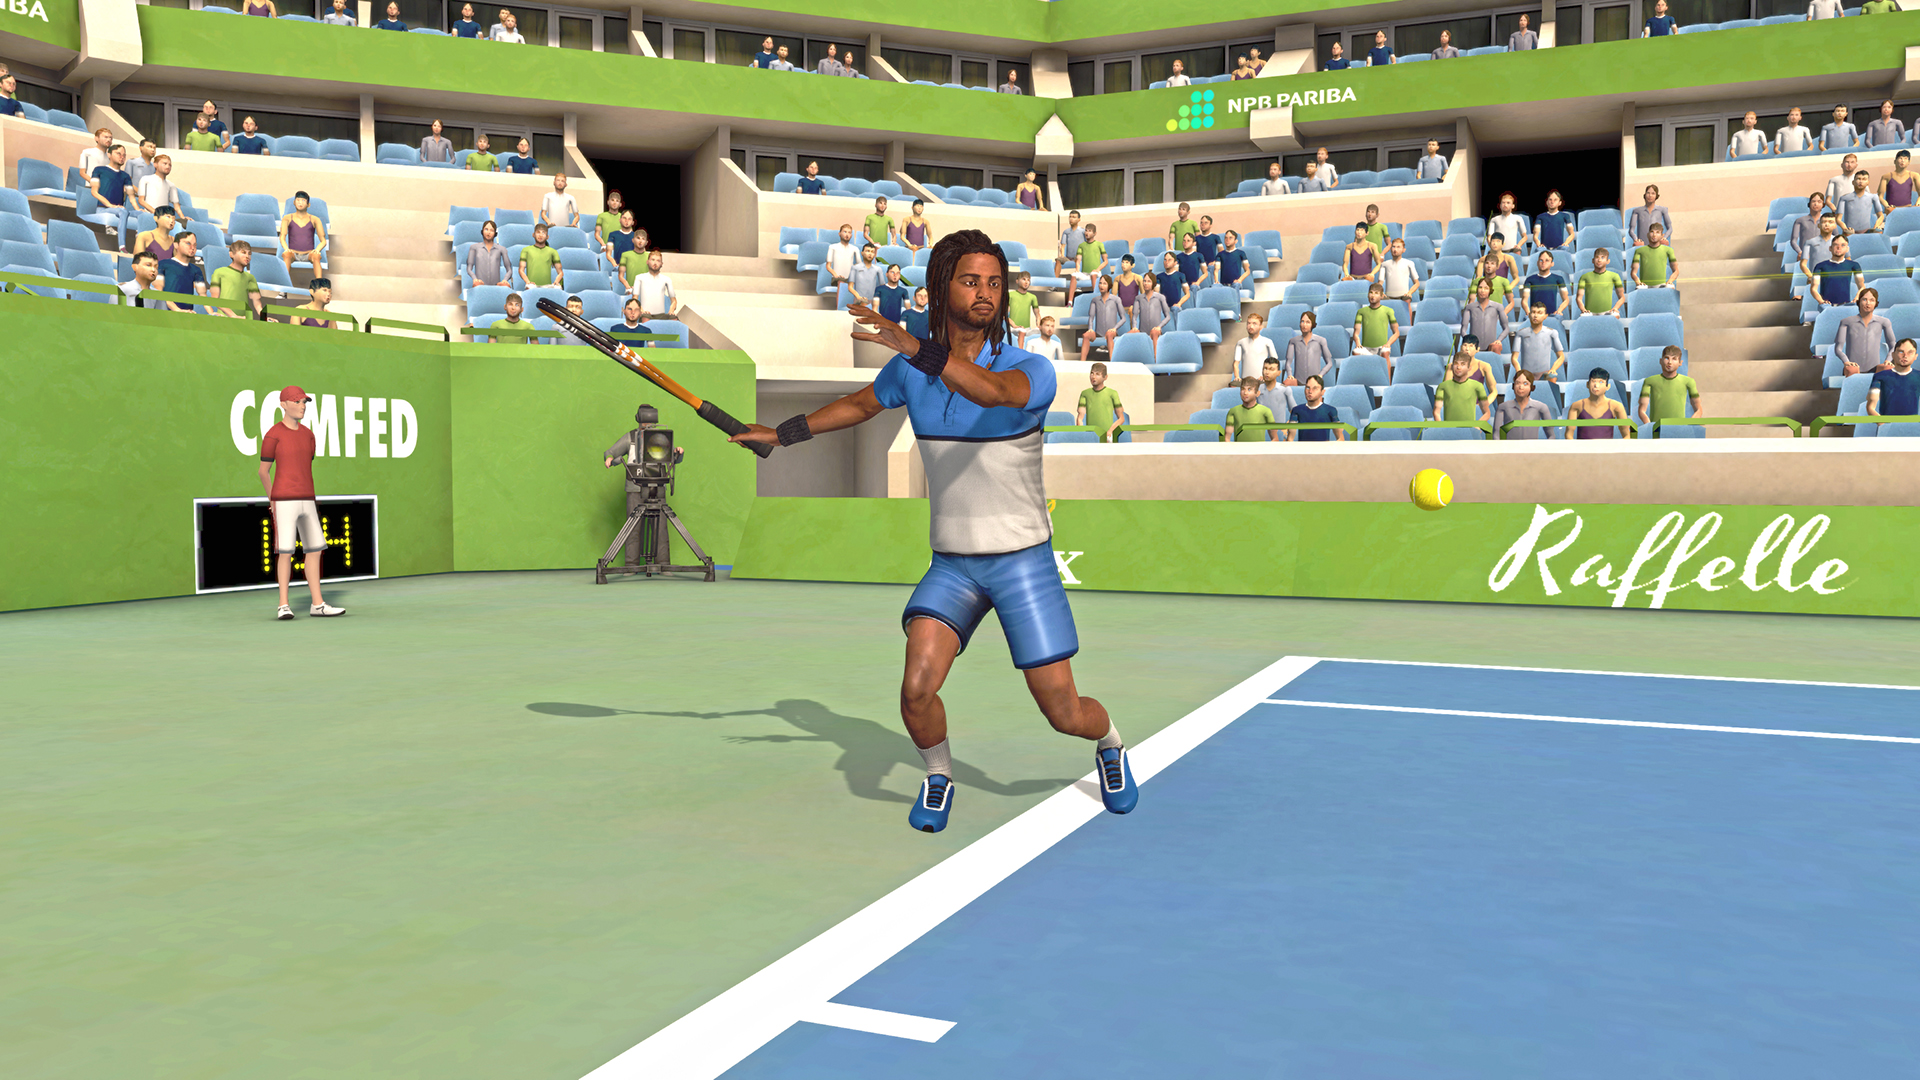 First Person Tennis - The Real Tennis Simulator en Steam